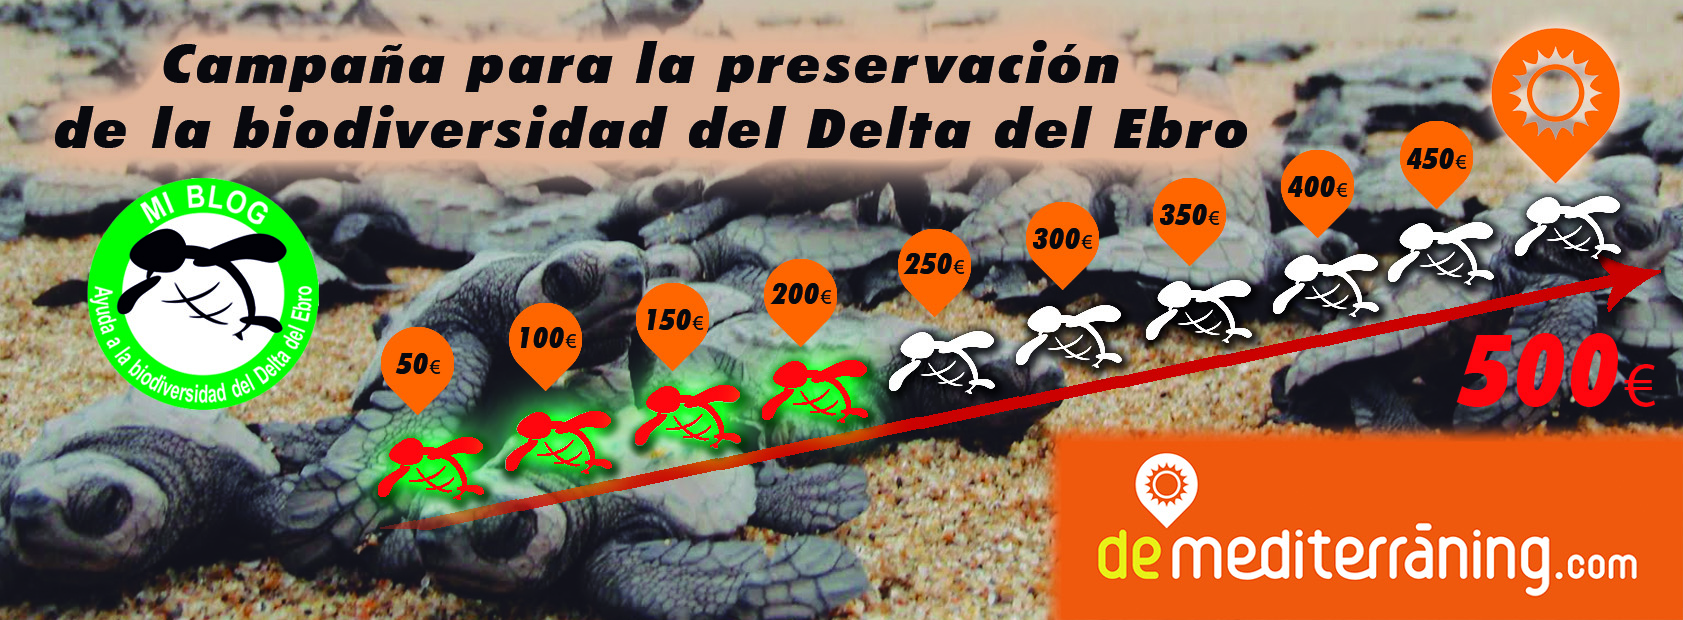 Campaña Biodiversidad Delta Ebro